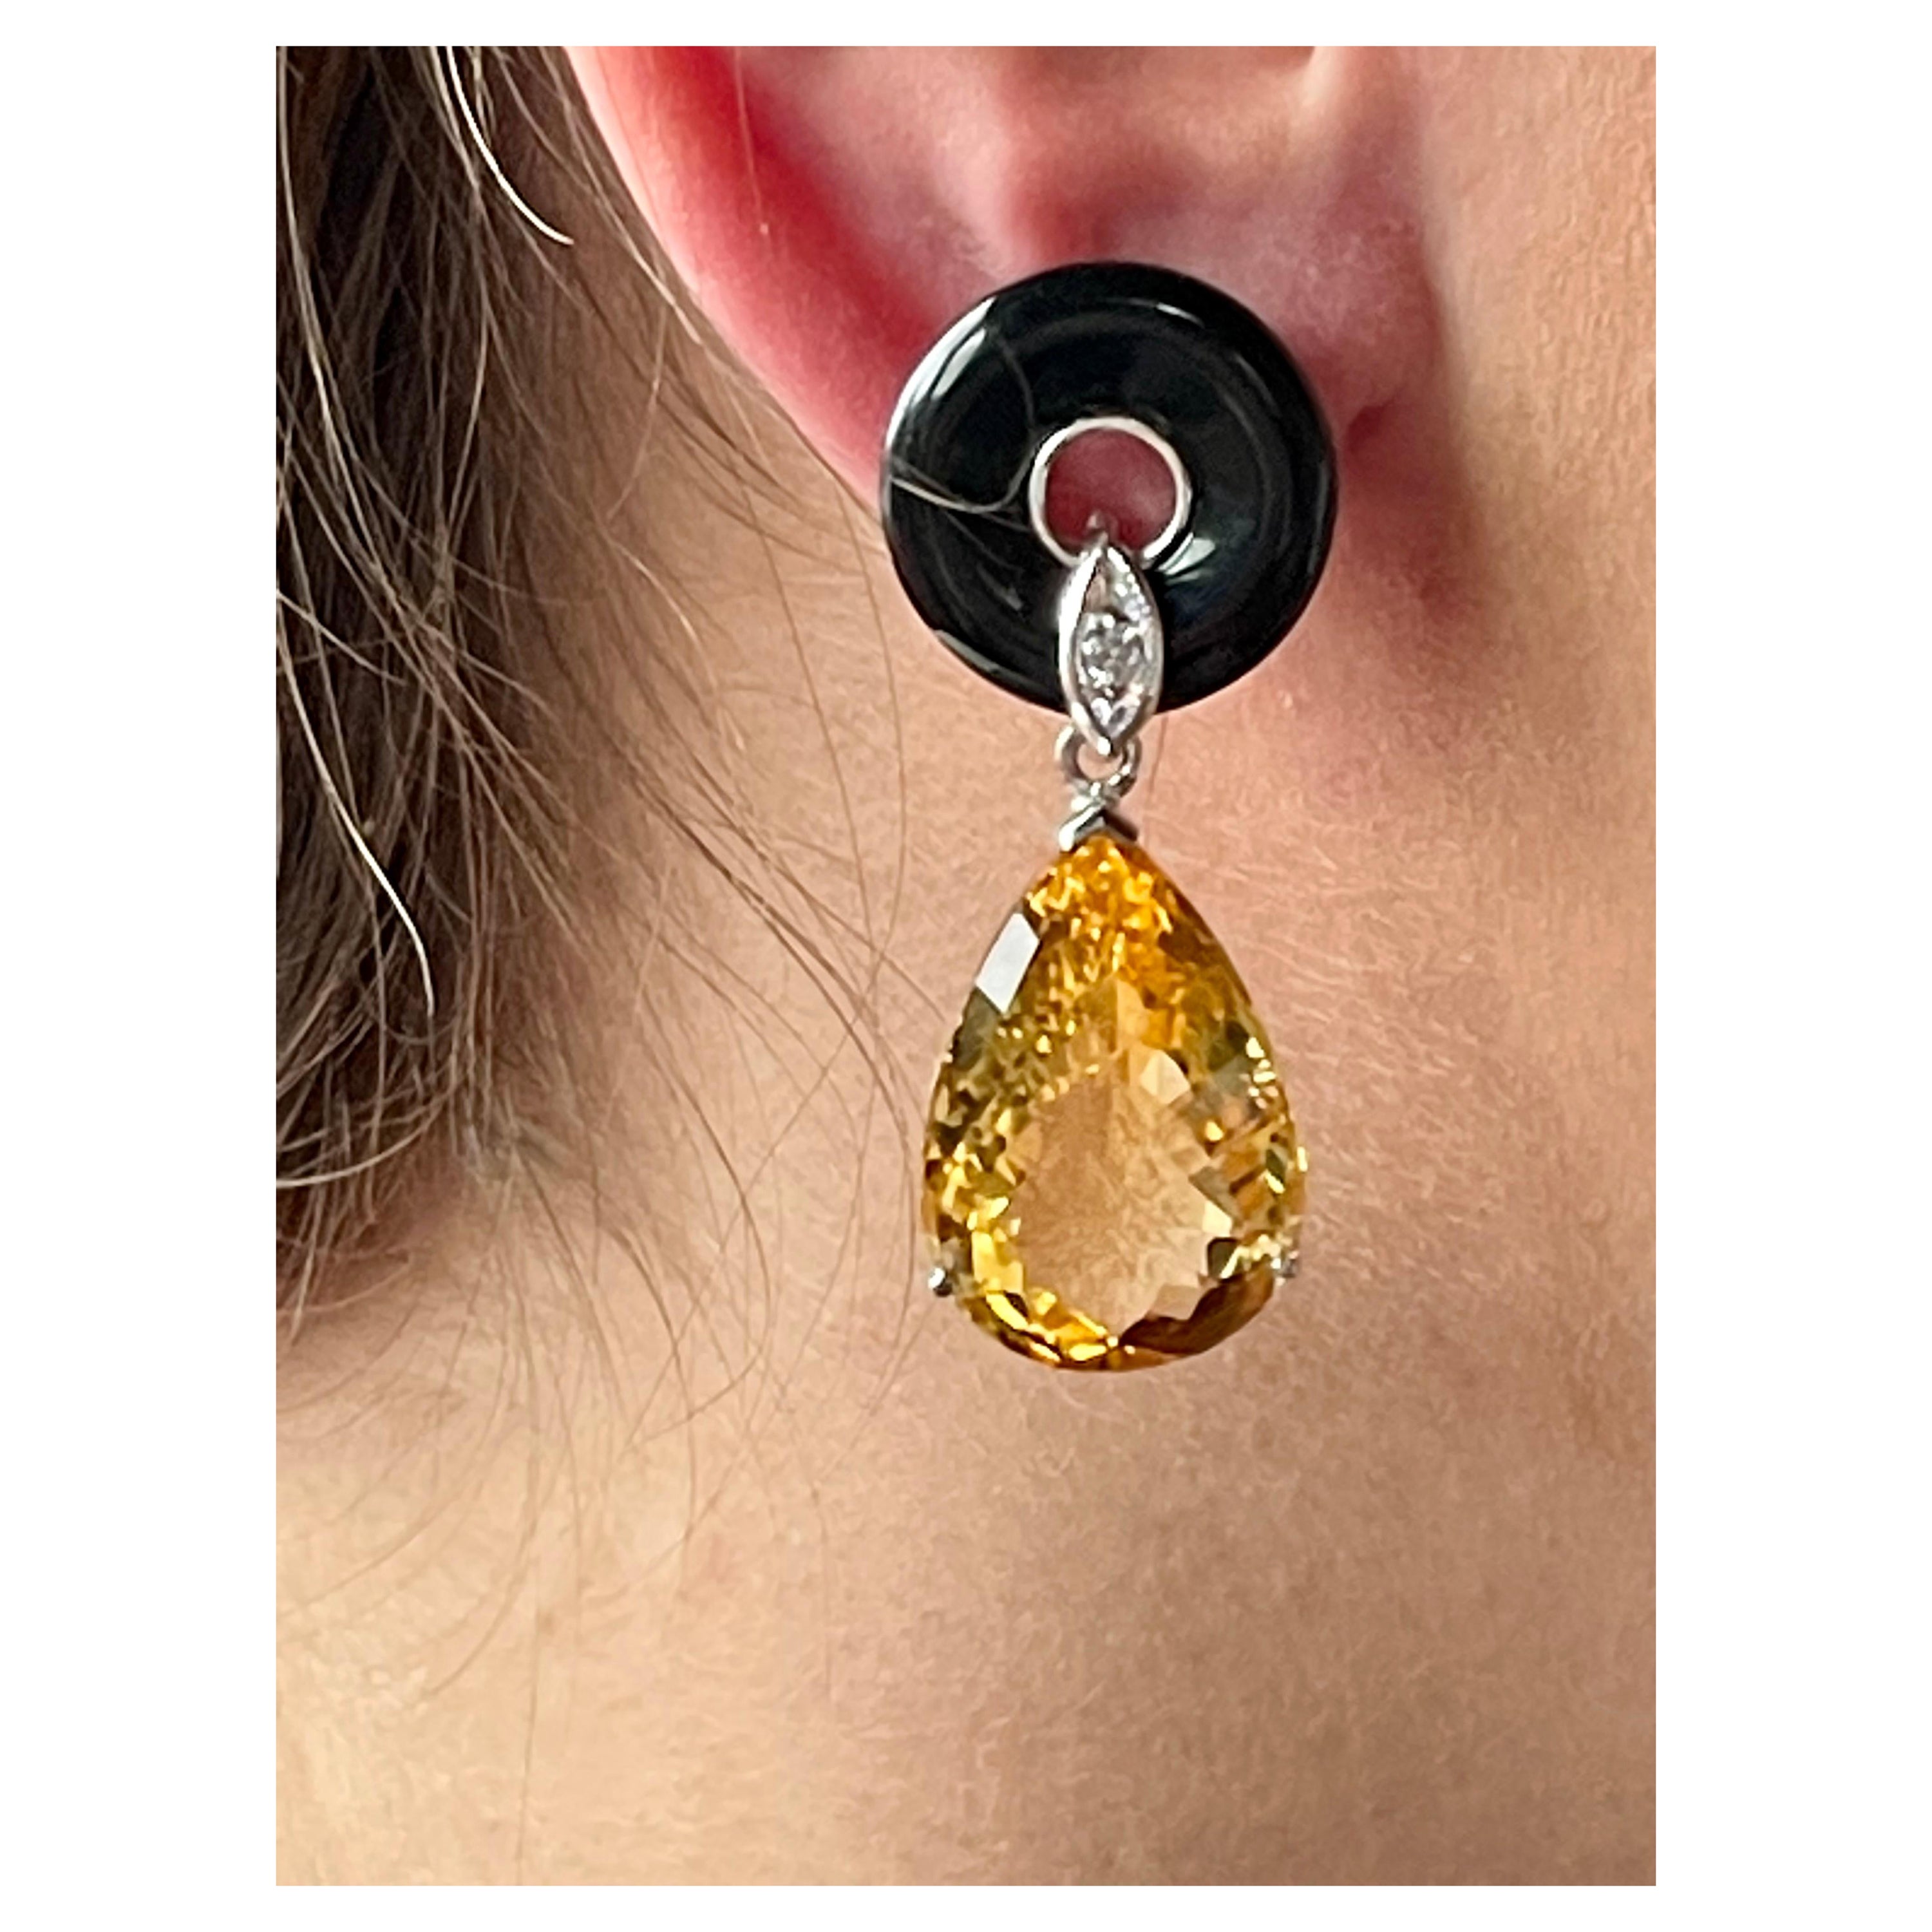 18 K White Gold Onyx Citrine Diamond Dangle Earrings